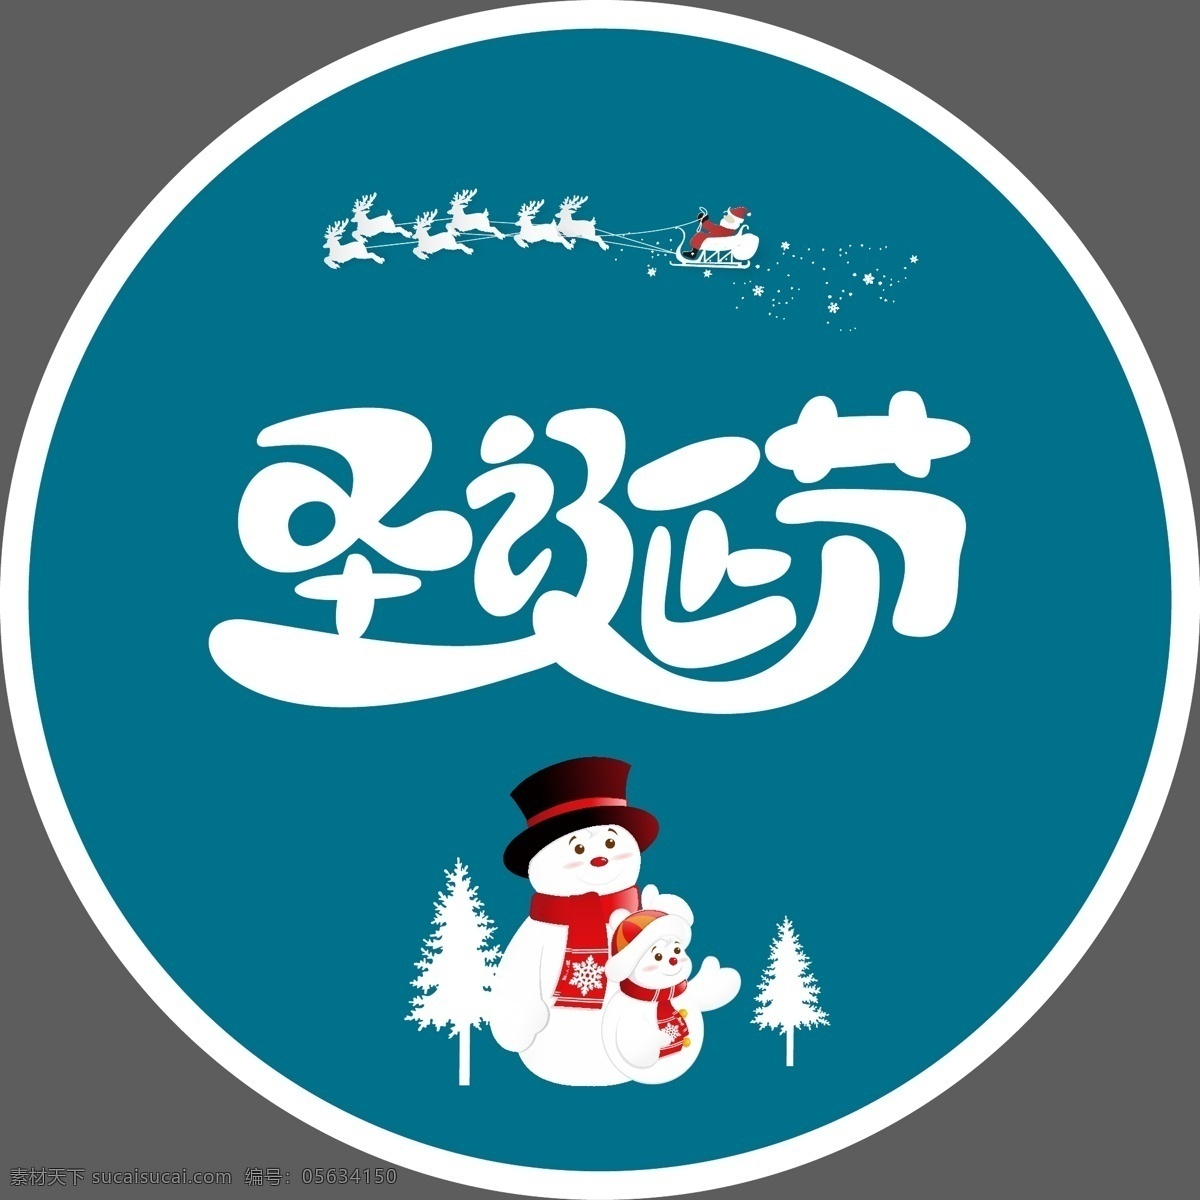 圣诞节 元素 圣诞节元素 雪人 麋鹿拉雪橇 麋鹿 圣诞树 圣诞 节日促销海报